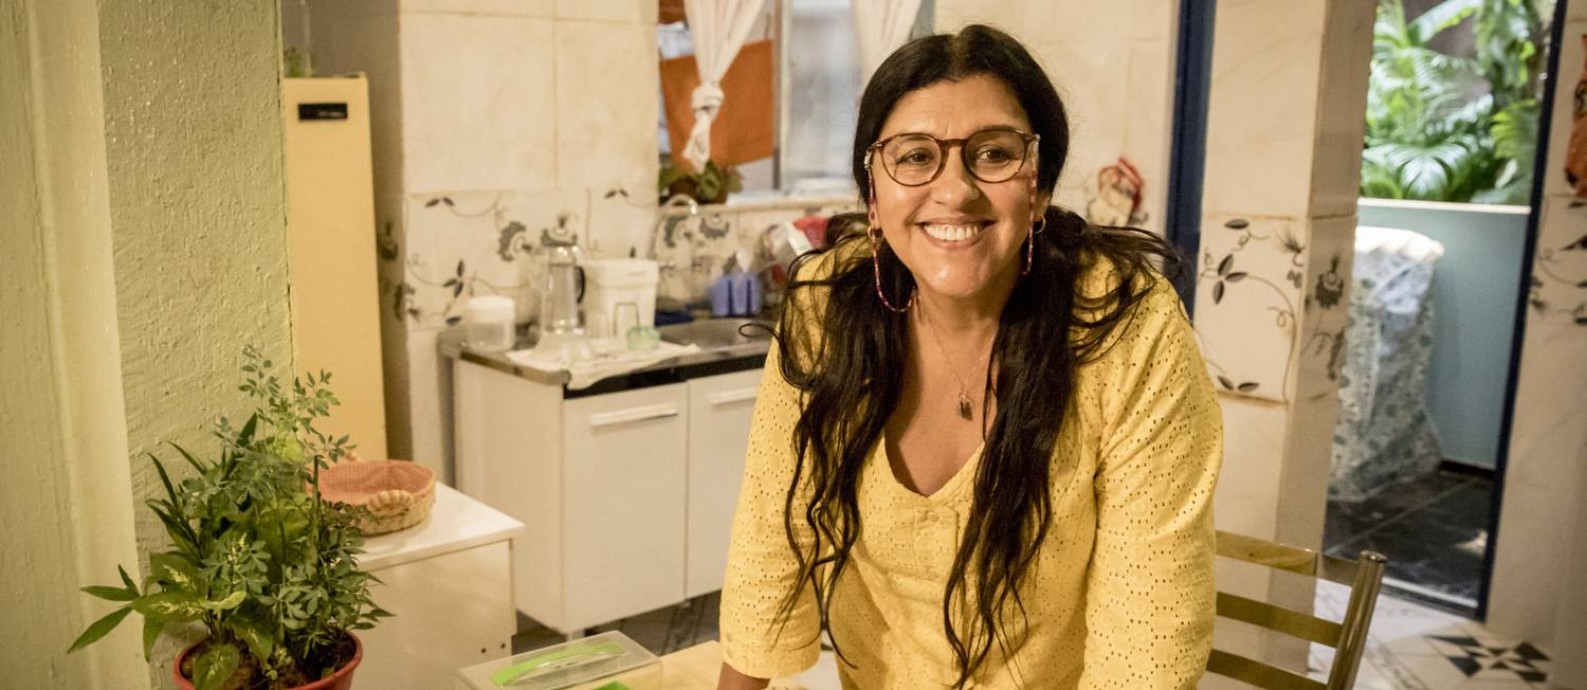 Caracterizada como Lurdes, uma das protagonistas de 'Amor de mãe', Regina Casé posa na casa de sua personagem, montada dentro do MG4, nos Estúdios Globo Foto: Globo/ João Cotta